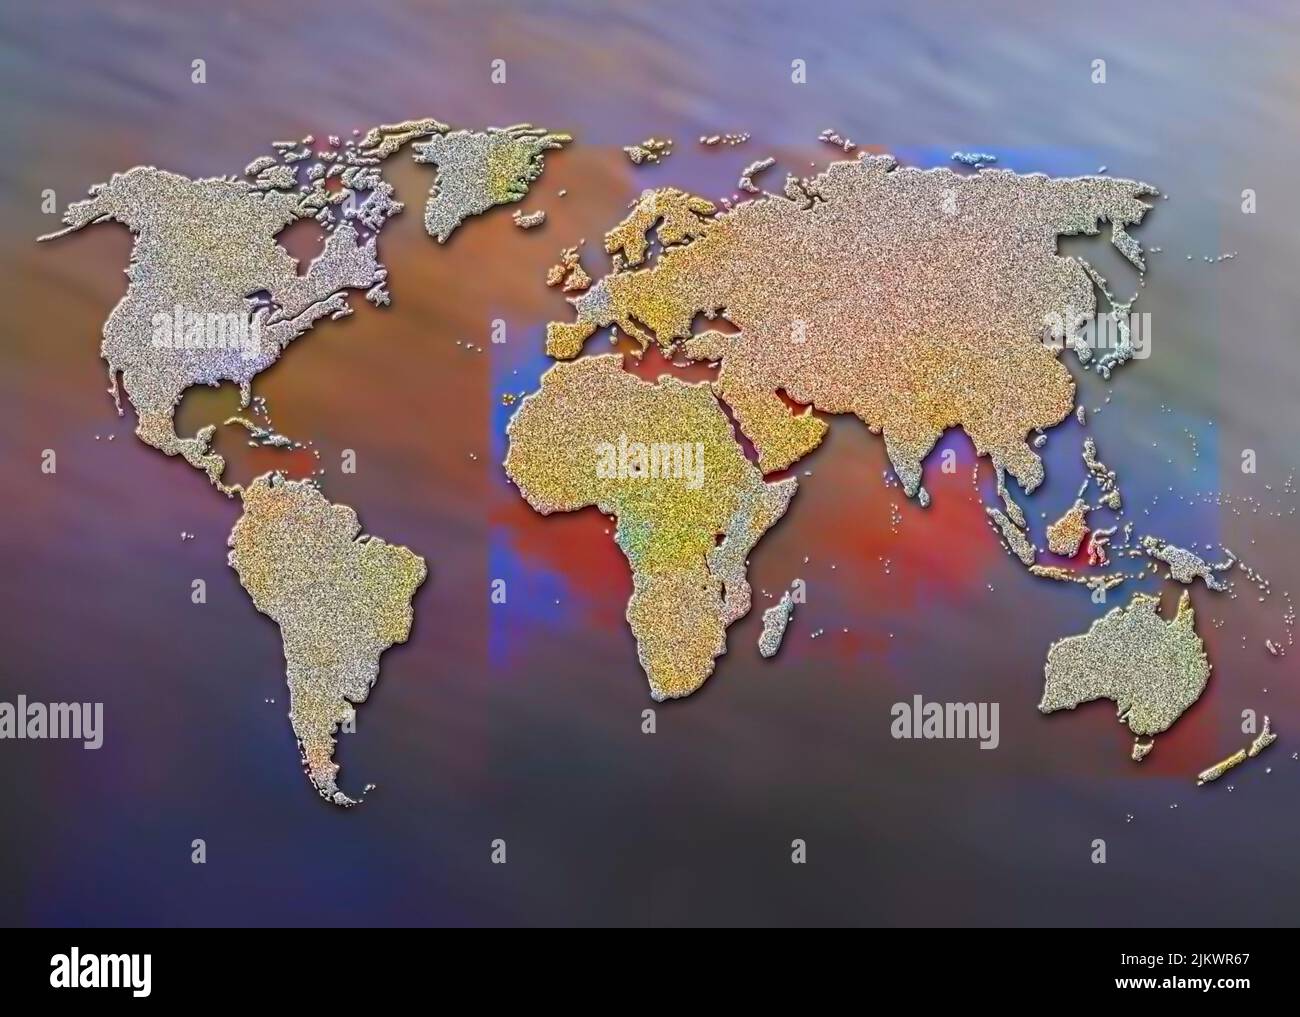 Mapa del mundo con los diferentes continentes y océanos. Foto de stock